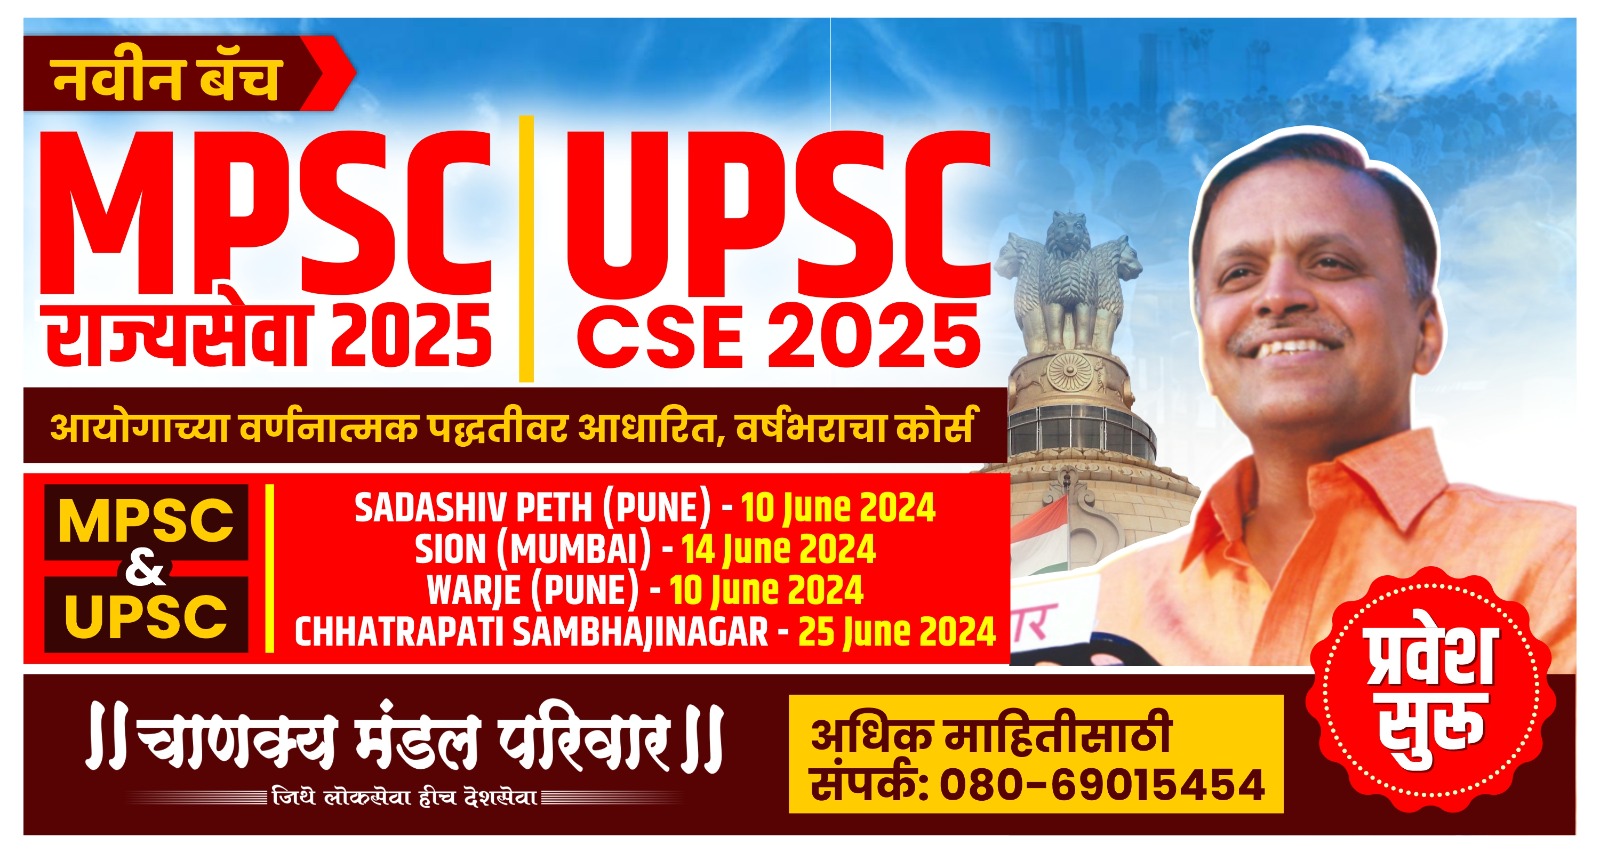 UPSC & MPSC Courses